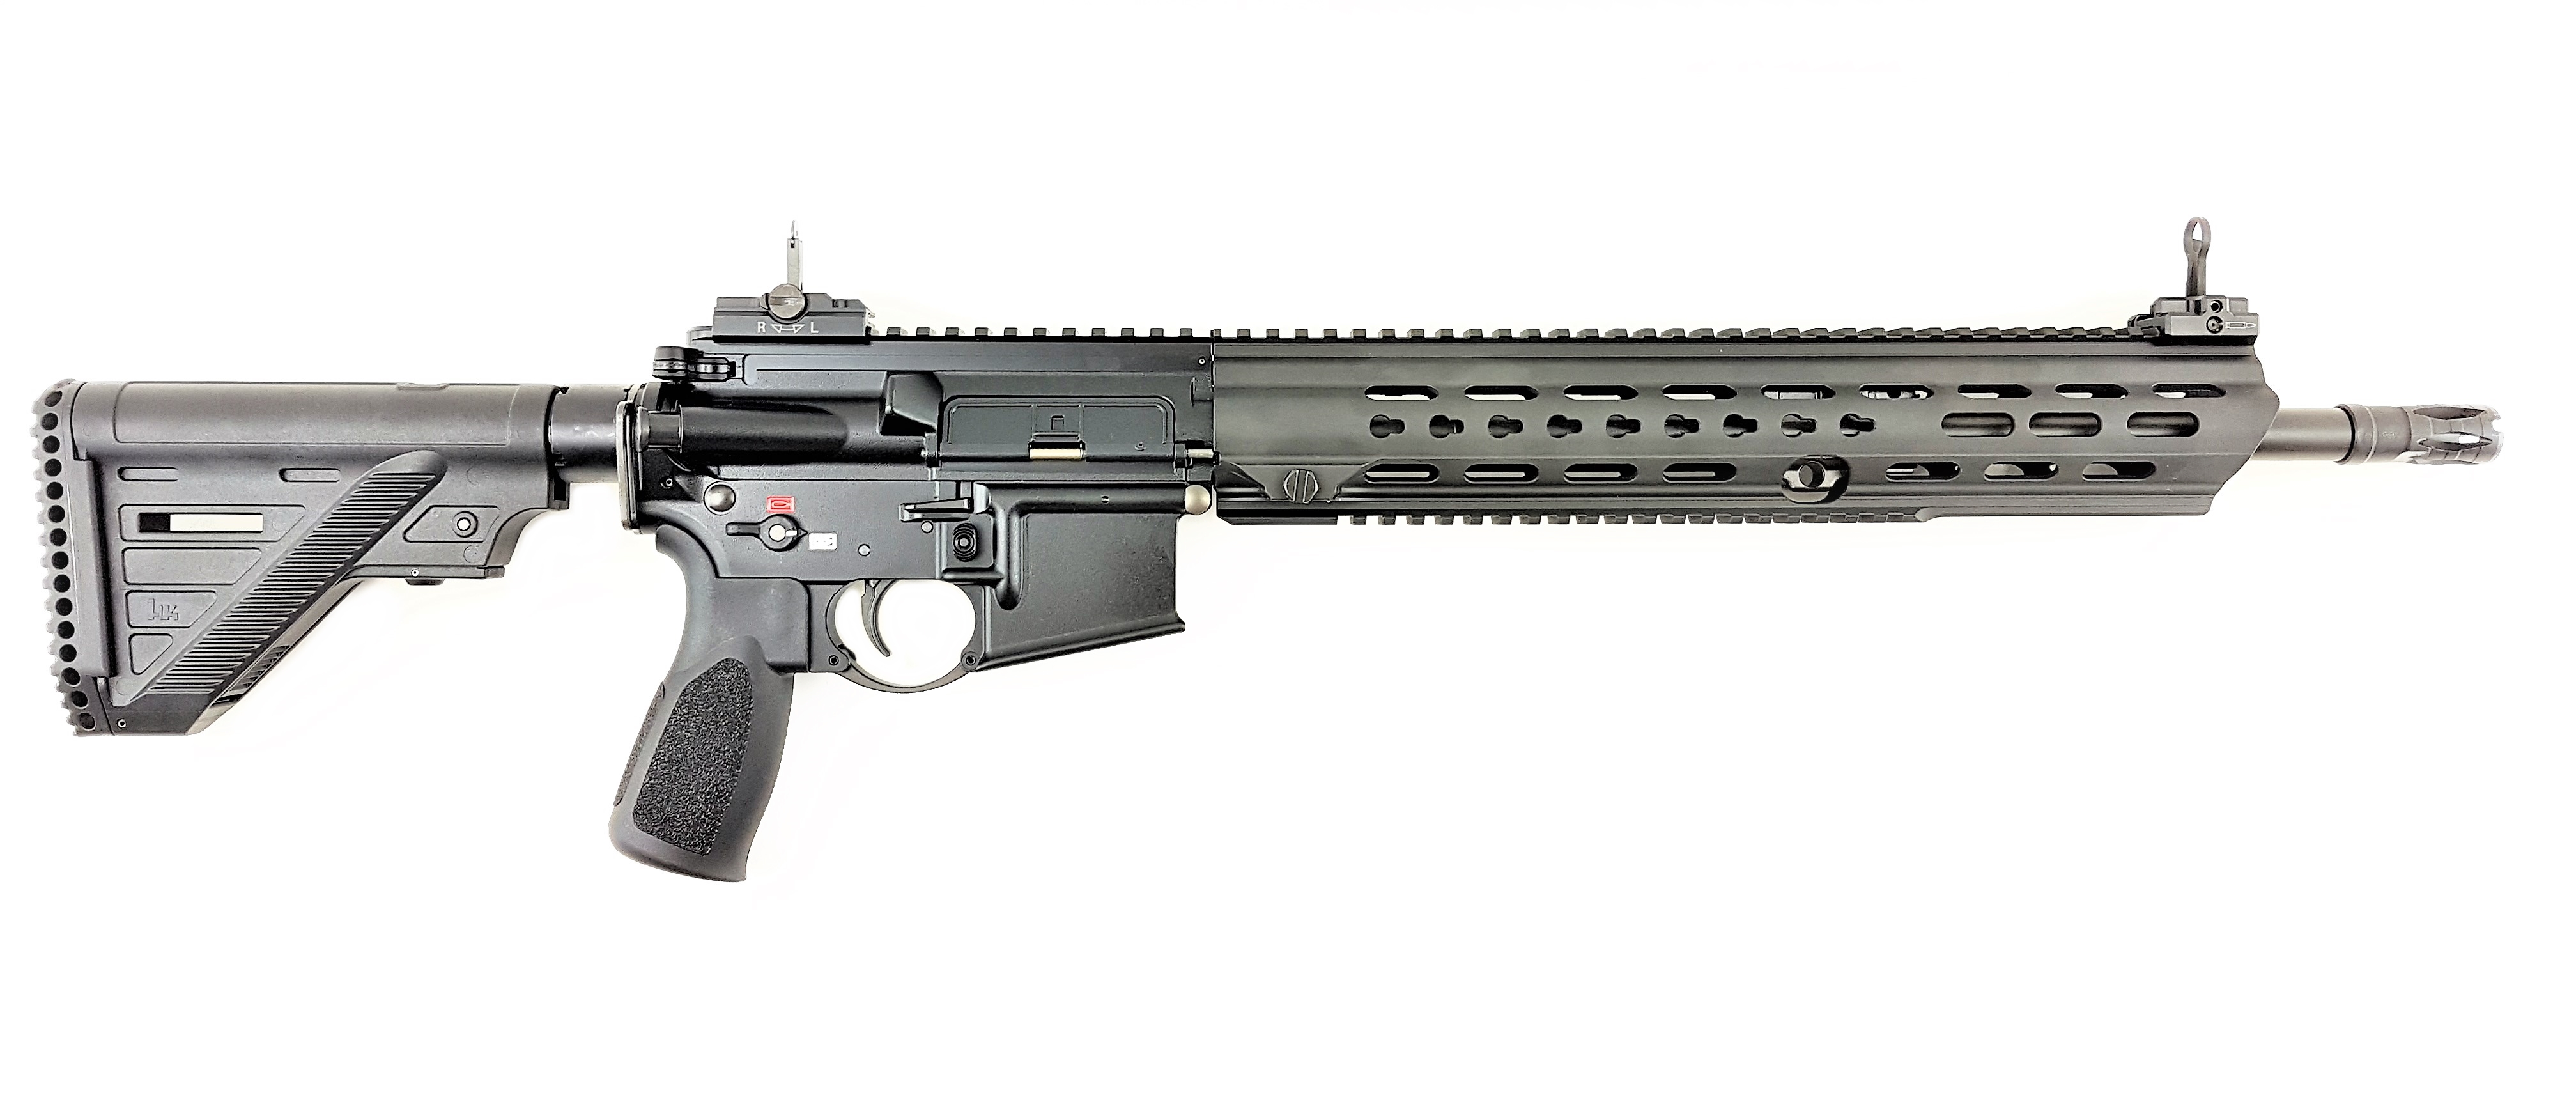 HK MR223 zivile Version des HK 416 | F.A.S.T. Onlineshop